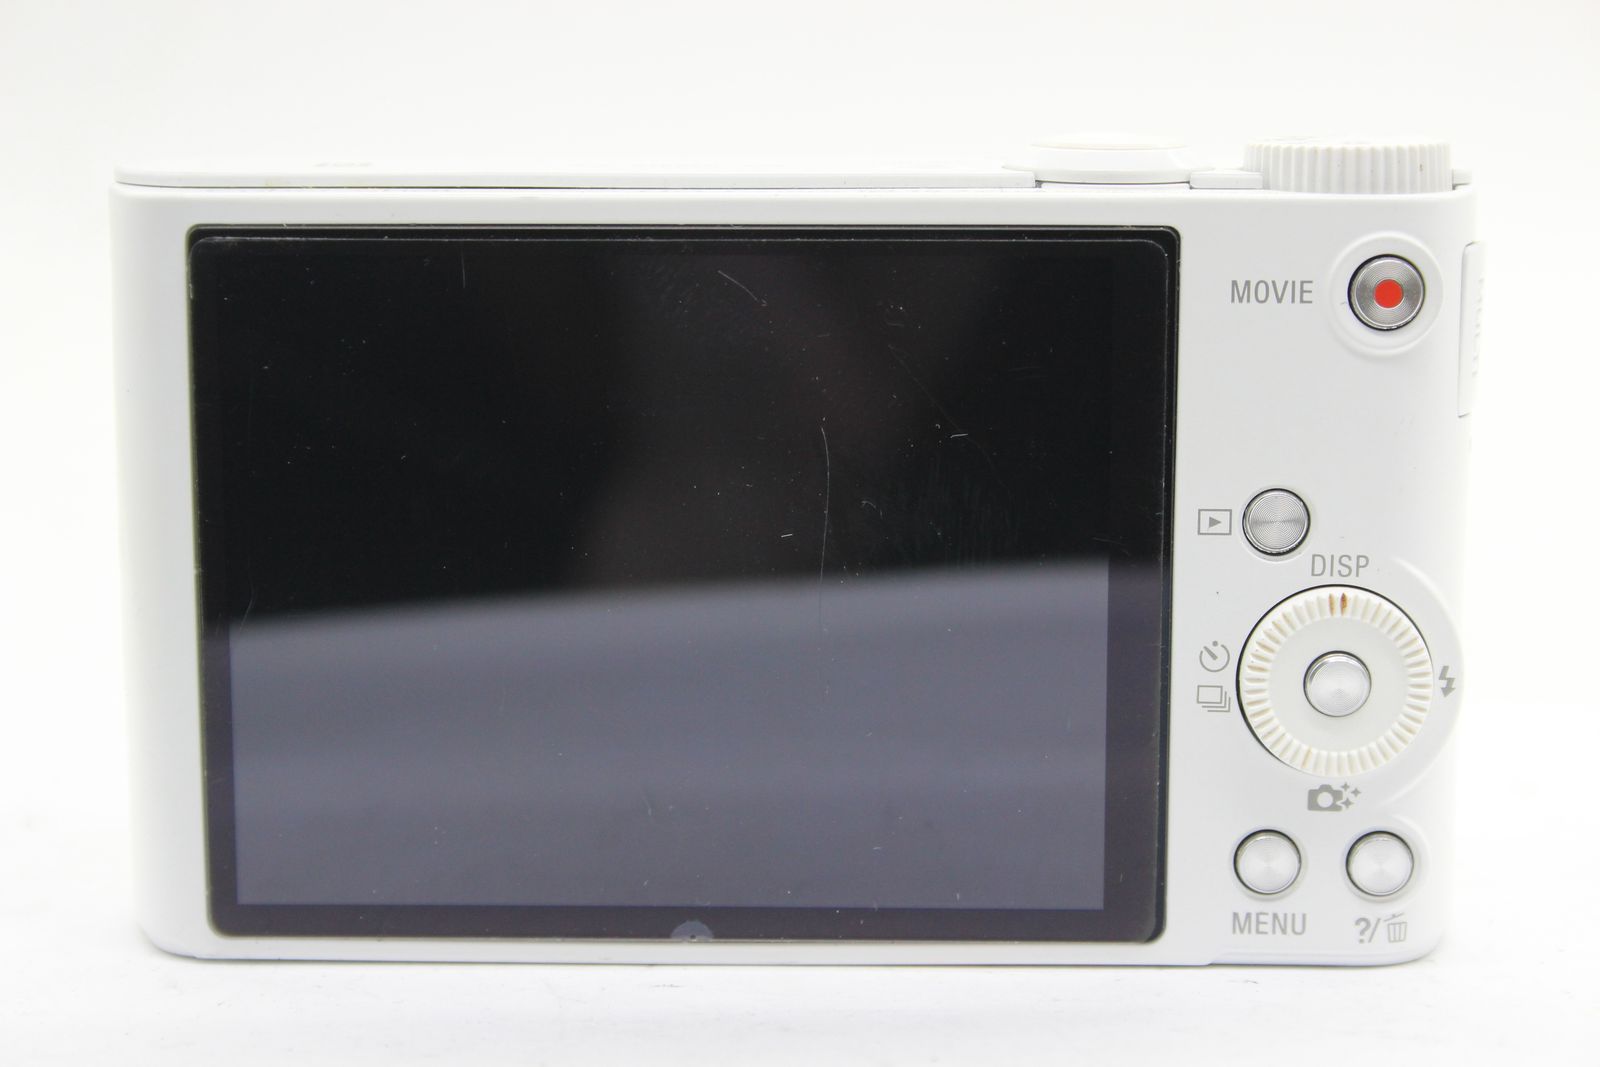 【返品保証】 ソニー SONY Cyber-shot DSC-WX300 ホワイト 20x バッテリー付き コンパクトデジタルカメラ  s5434